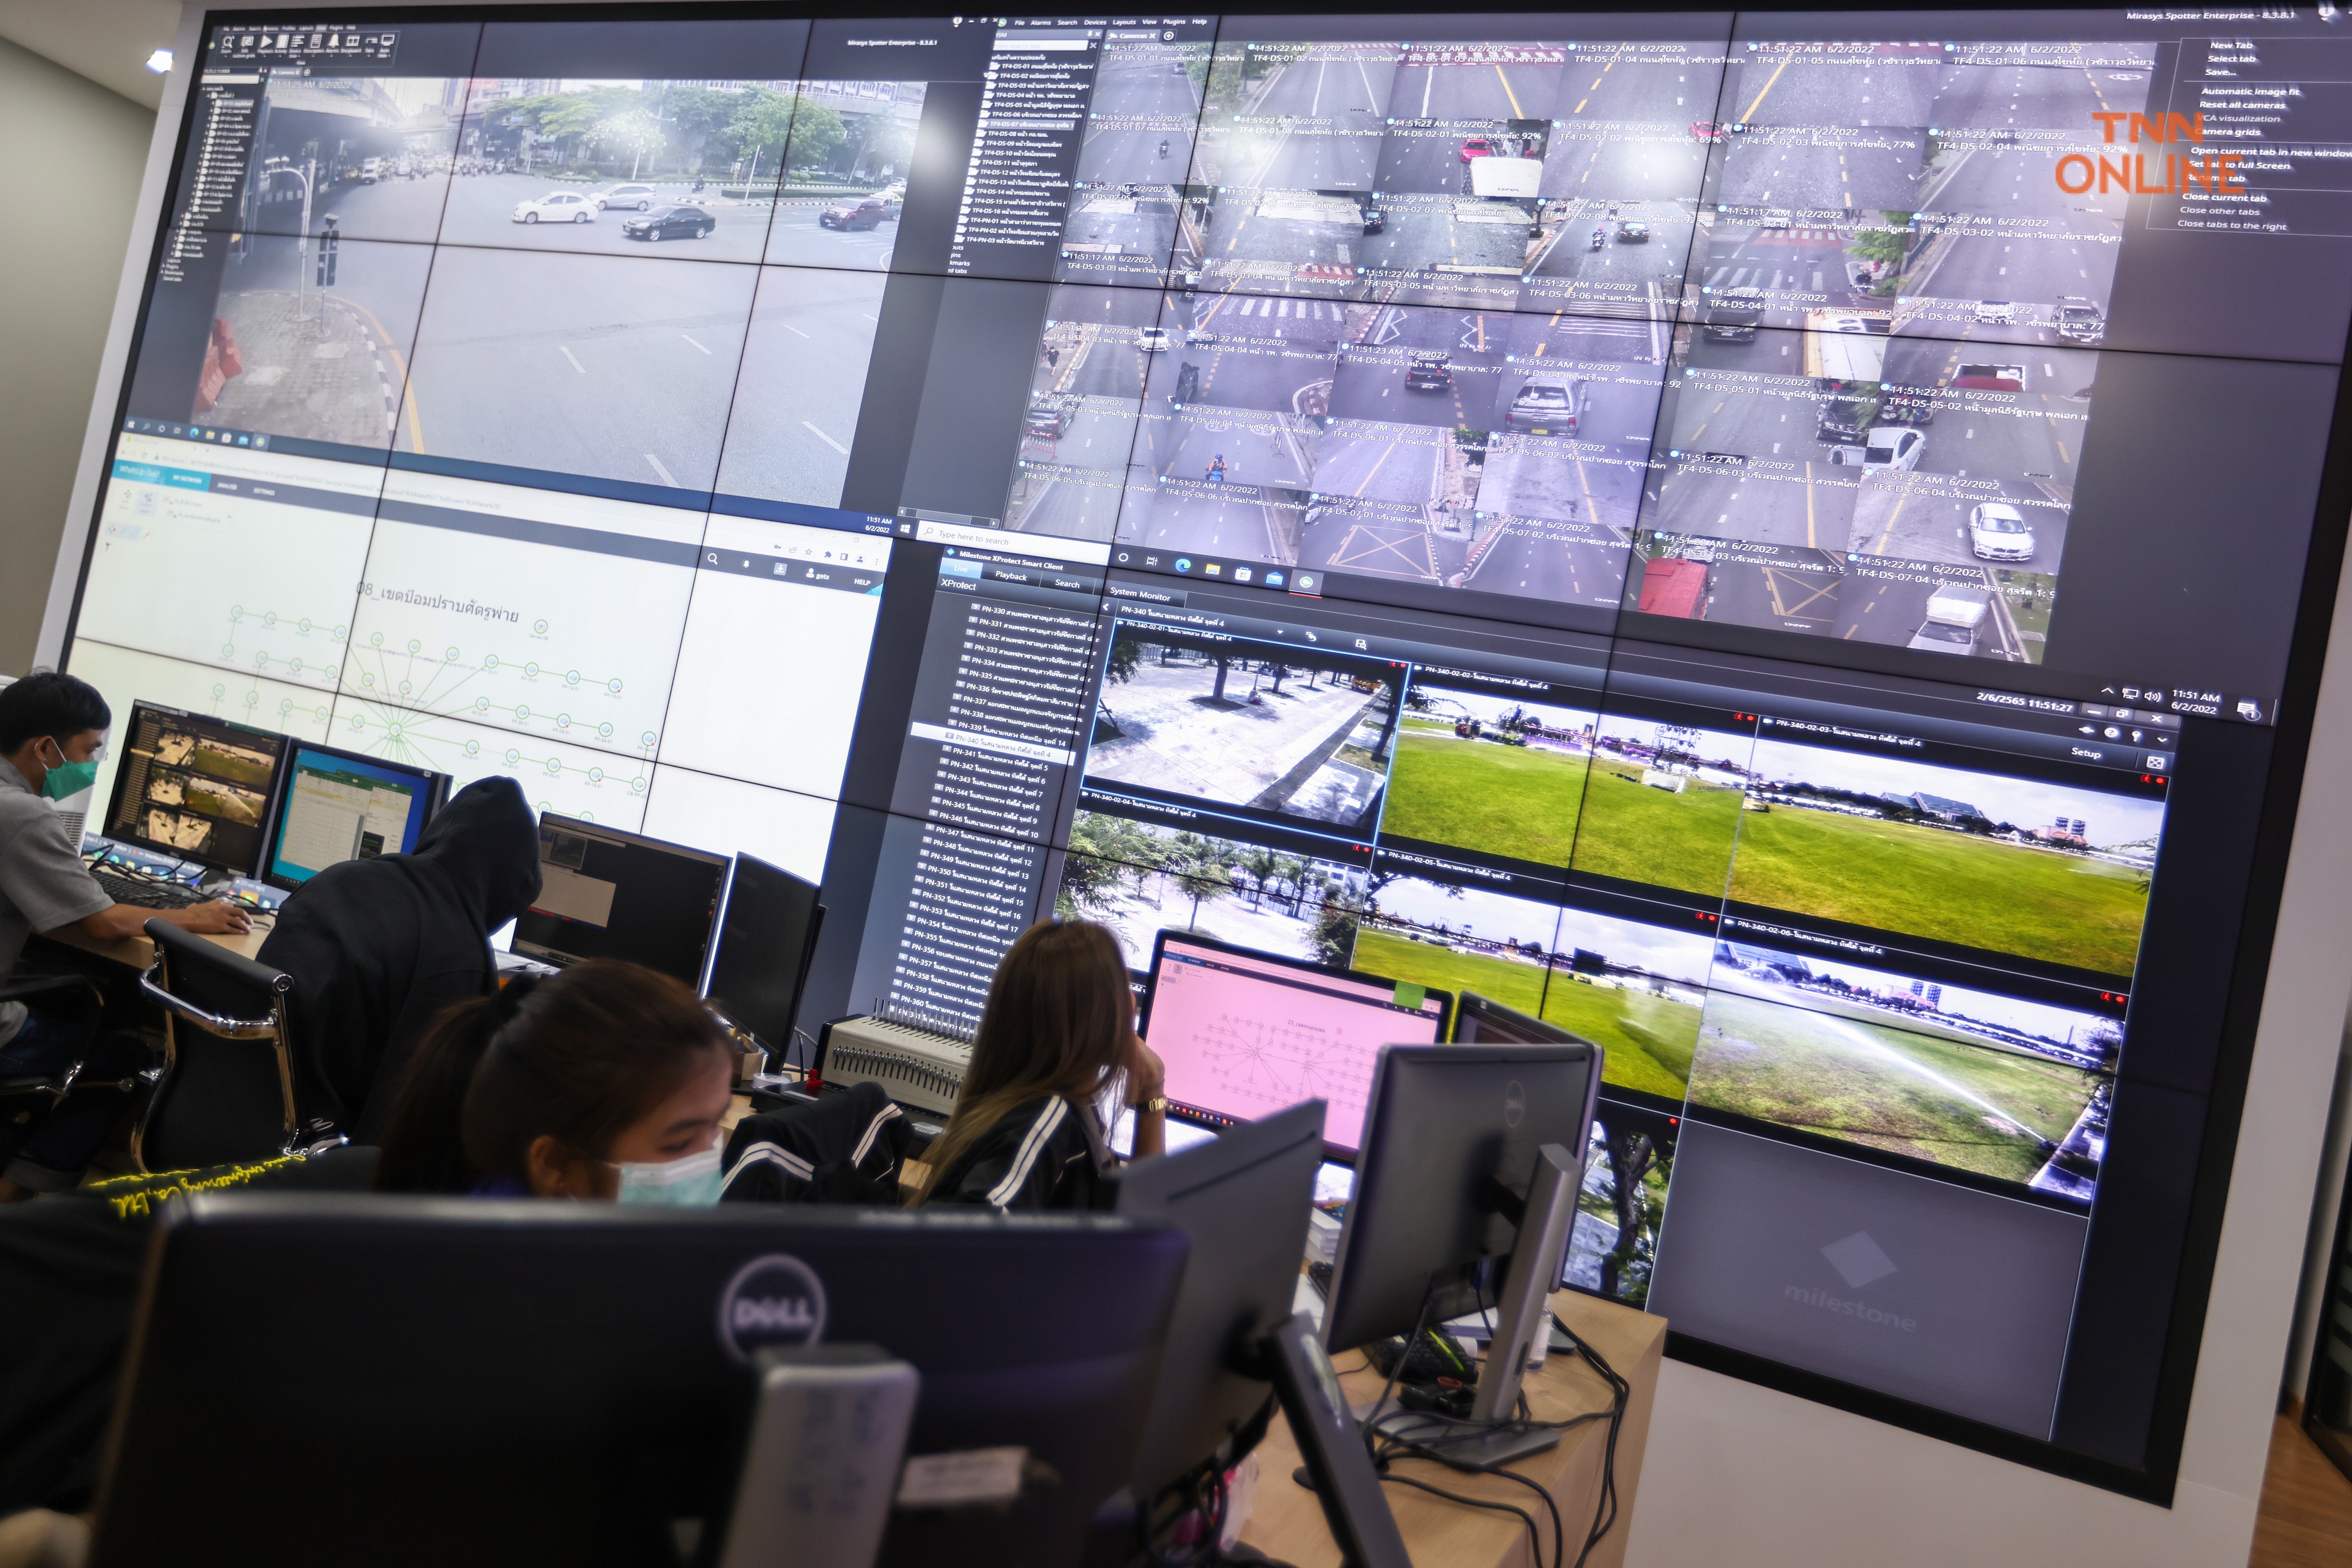 ประมวลภาพ ชัชชาติ พาชมห้อง CCTV เชื่อมระบบ Traffy Fondue รับแจ้งปัญหาพร้อมประเมินผลงานรายเขต เพื่อกระจายอำนาจให้ประชาชนมีส่วนร่วมพัฒนาเมือง